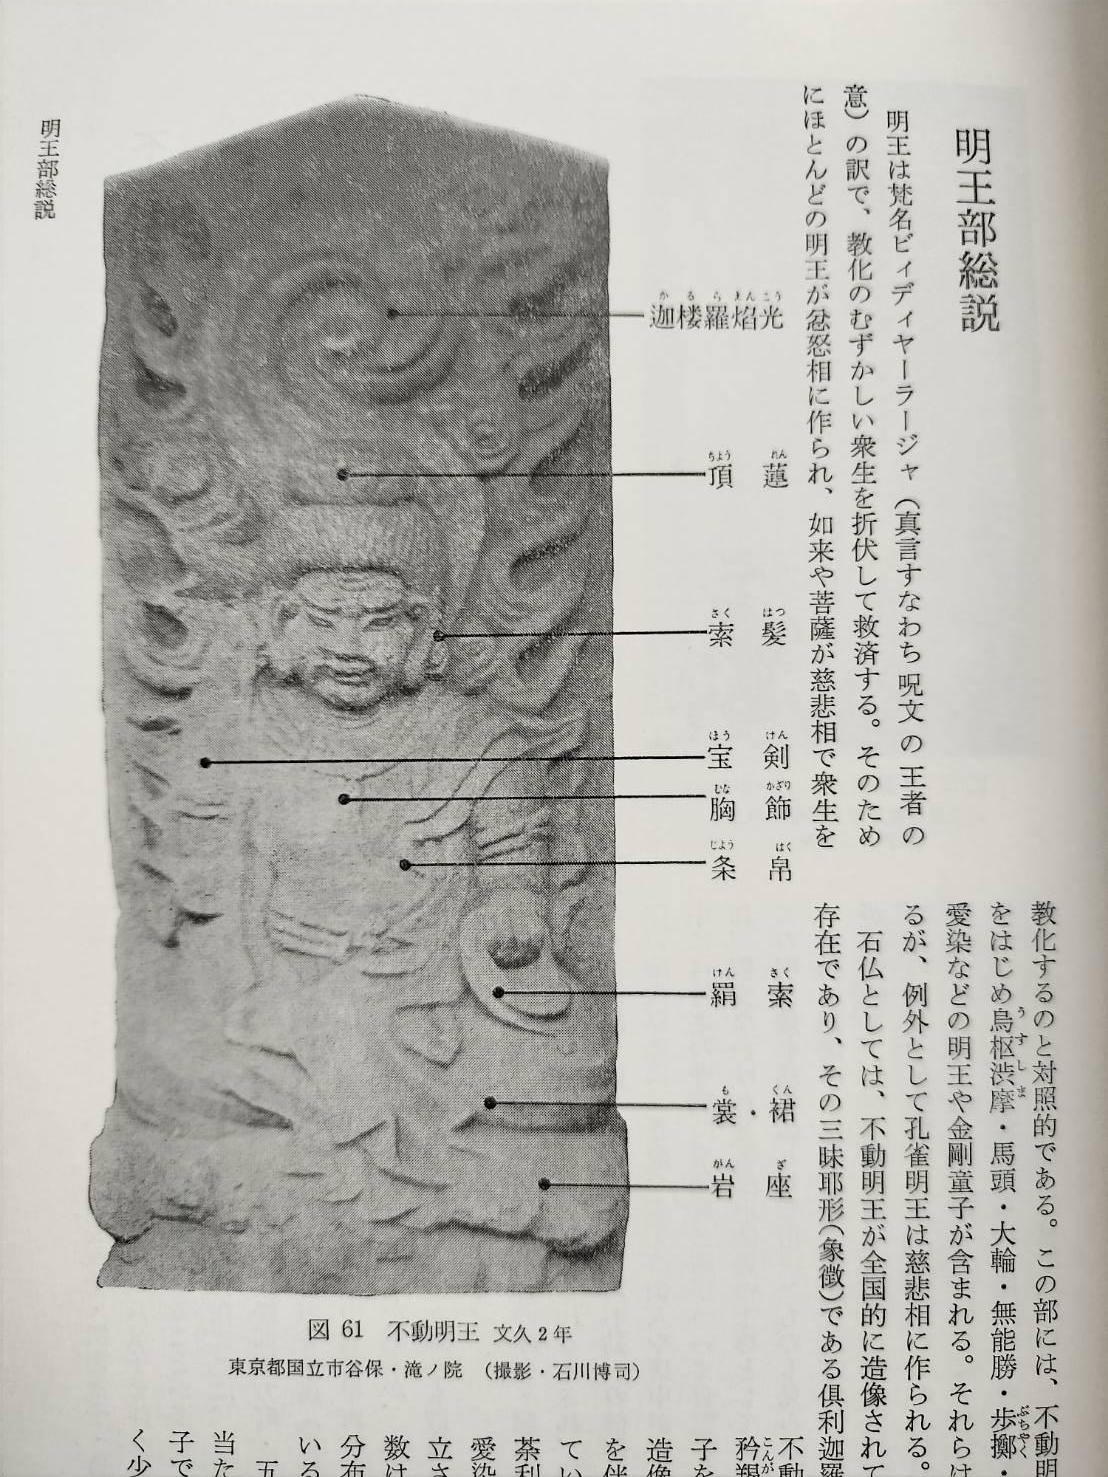 Japanese antique stone Buddha 